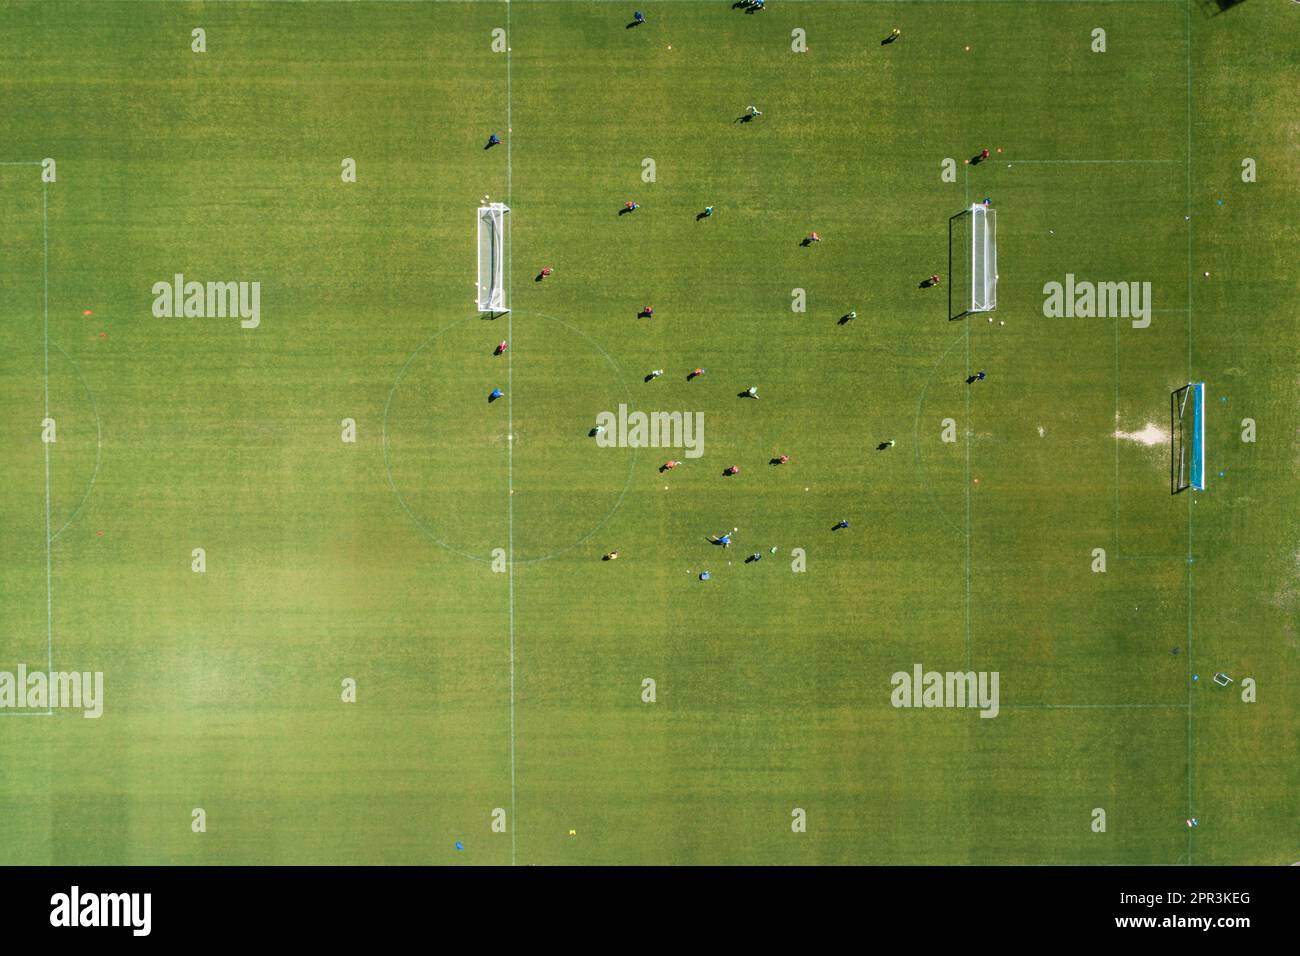 vista aerea zenithal di un campo da calcio durante una sessione di allenamento Foto Stock